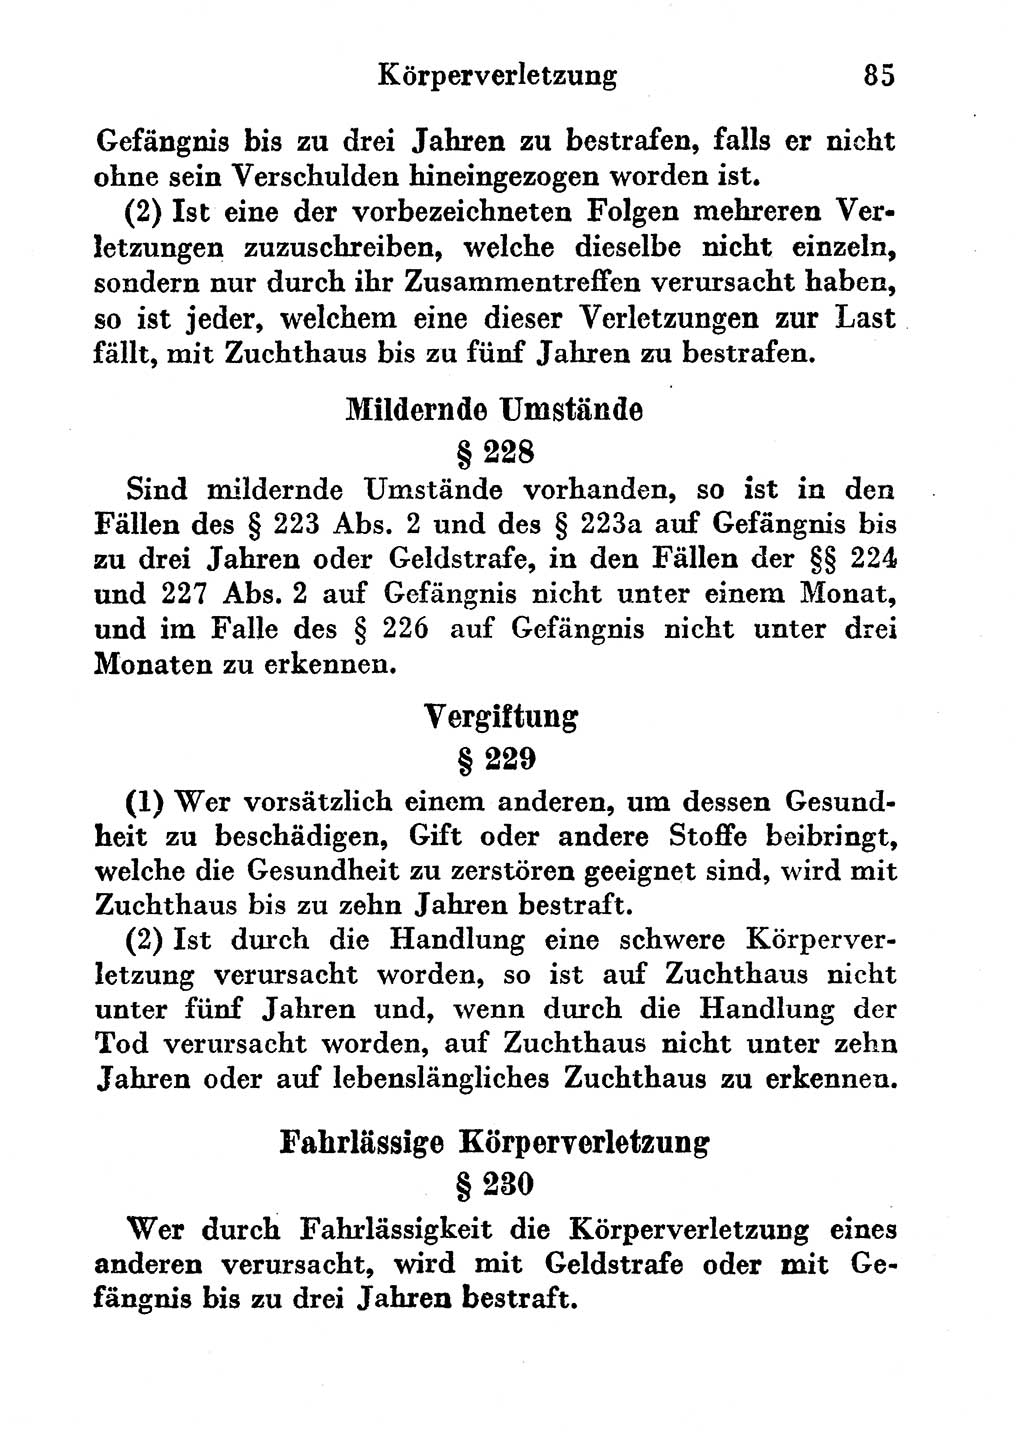 Strafgesetzbuch (StGB) und andere Strafgesetze [Deutsche Demokratische Republik (DDR)] 1956, Seite 85 (StGB Strafges. DDR 1956, S. 85)